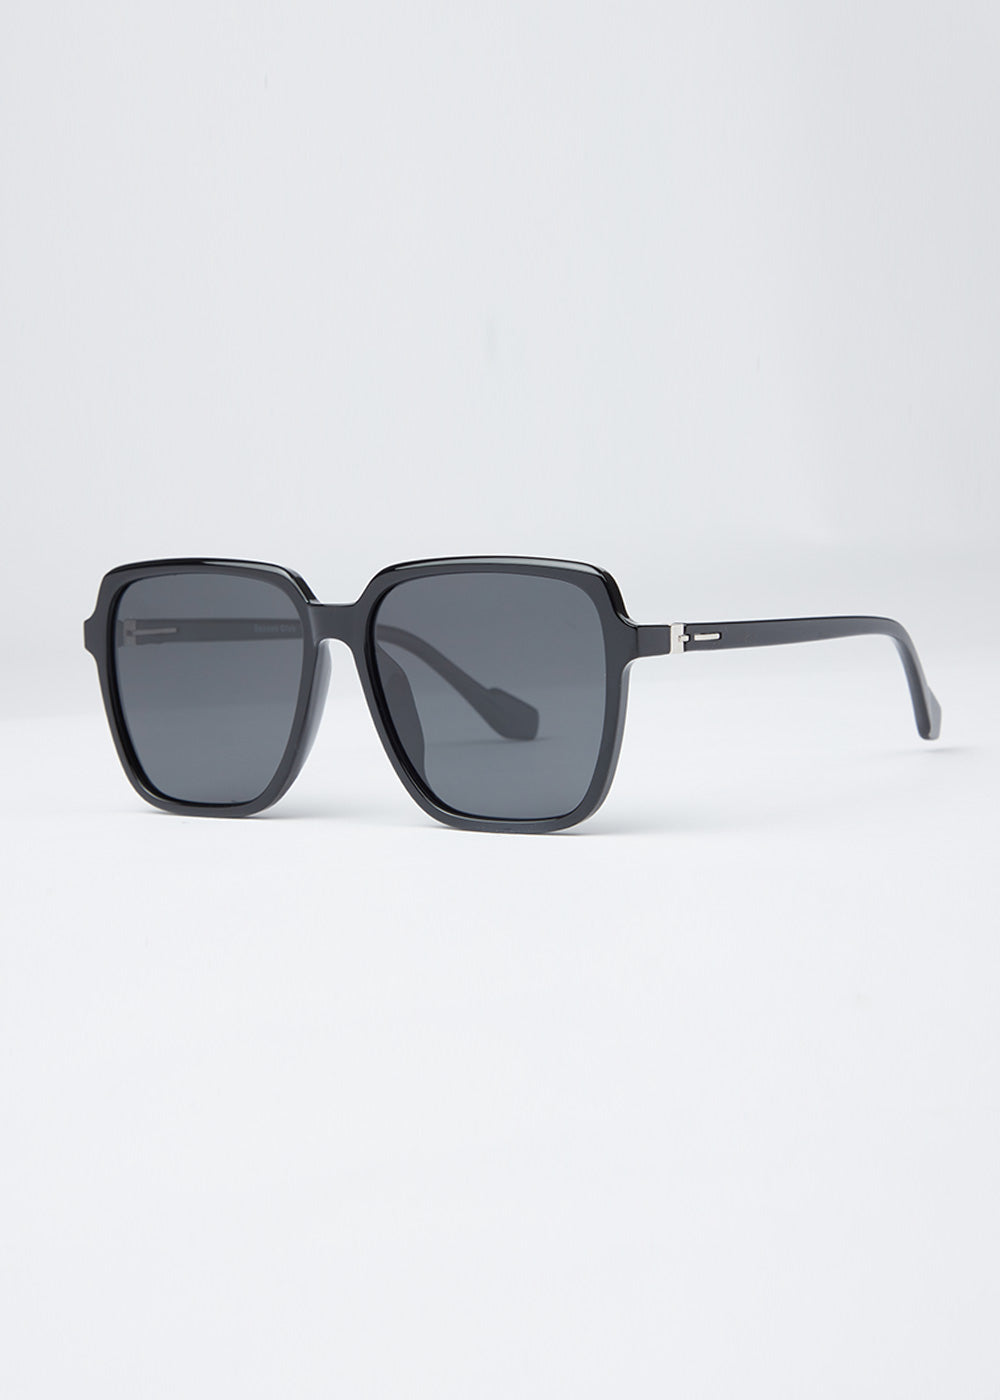 Classic Black Unisex Square Sunglasses